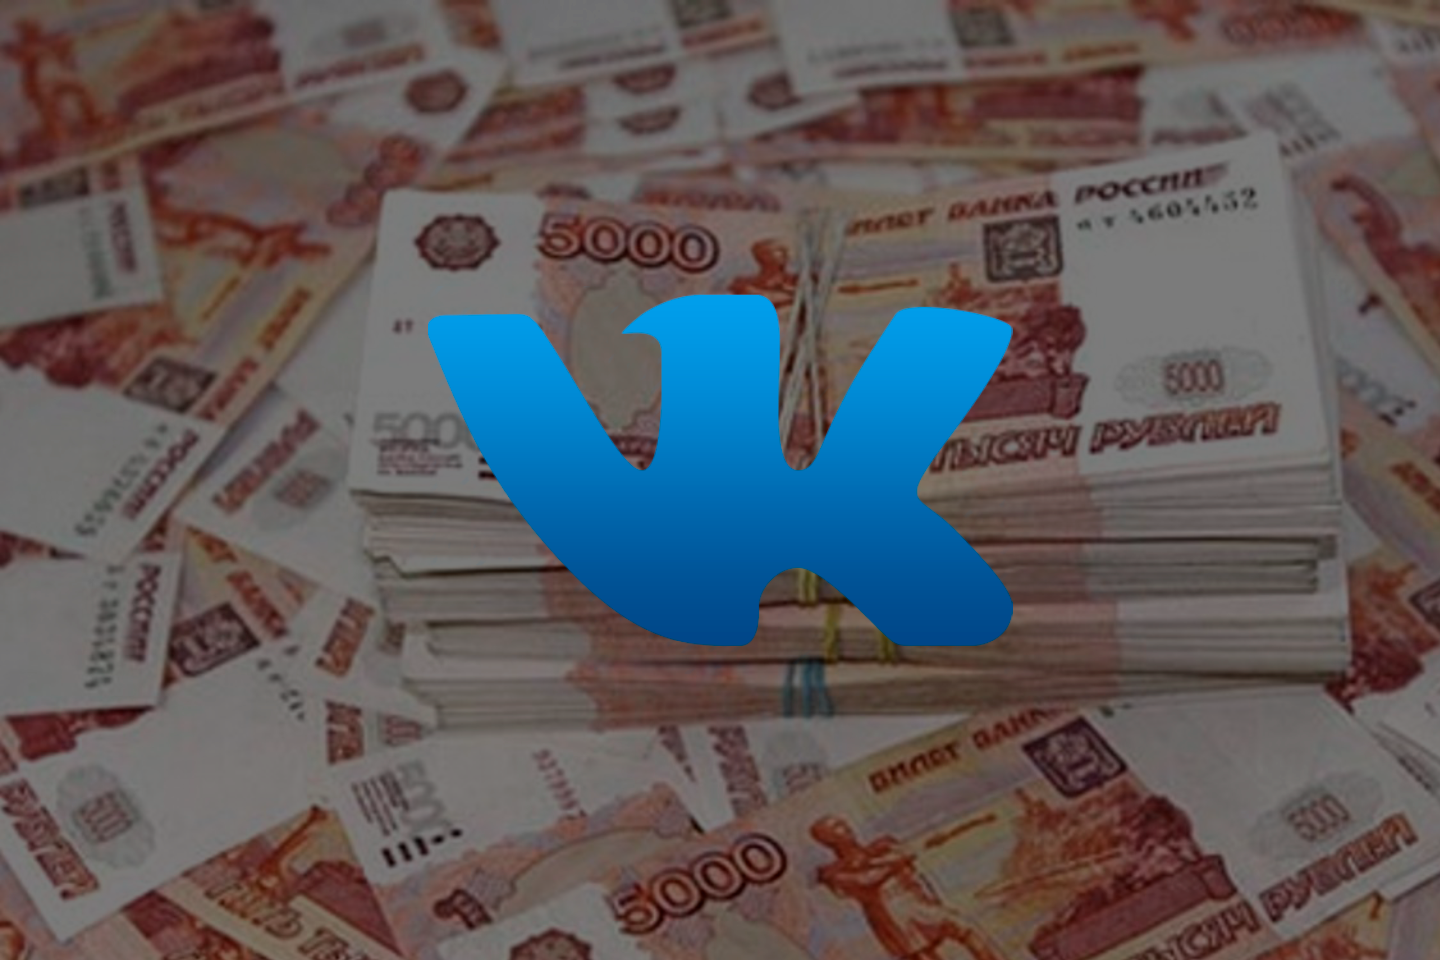 Есть ли во Вконтакте богатая аудитория?